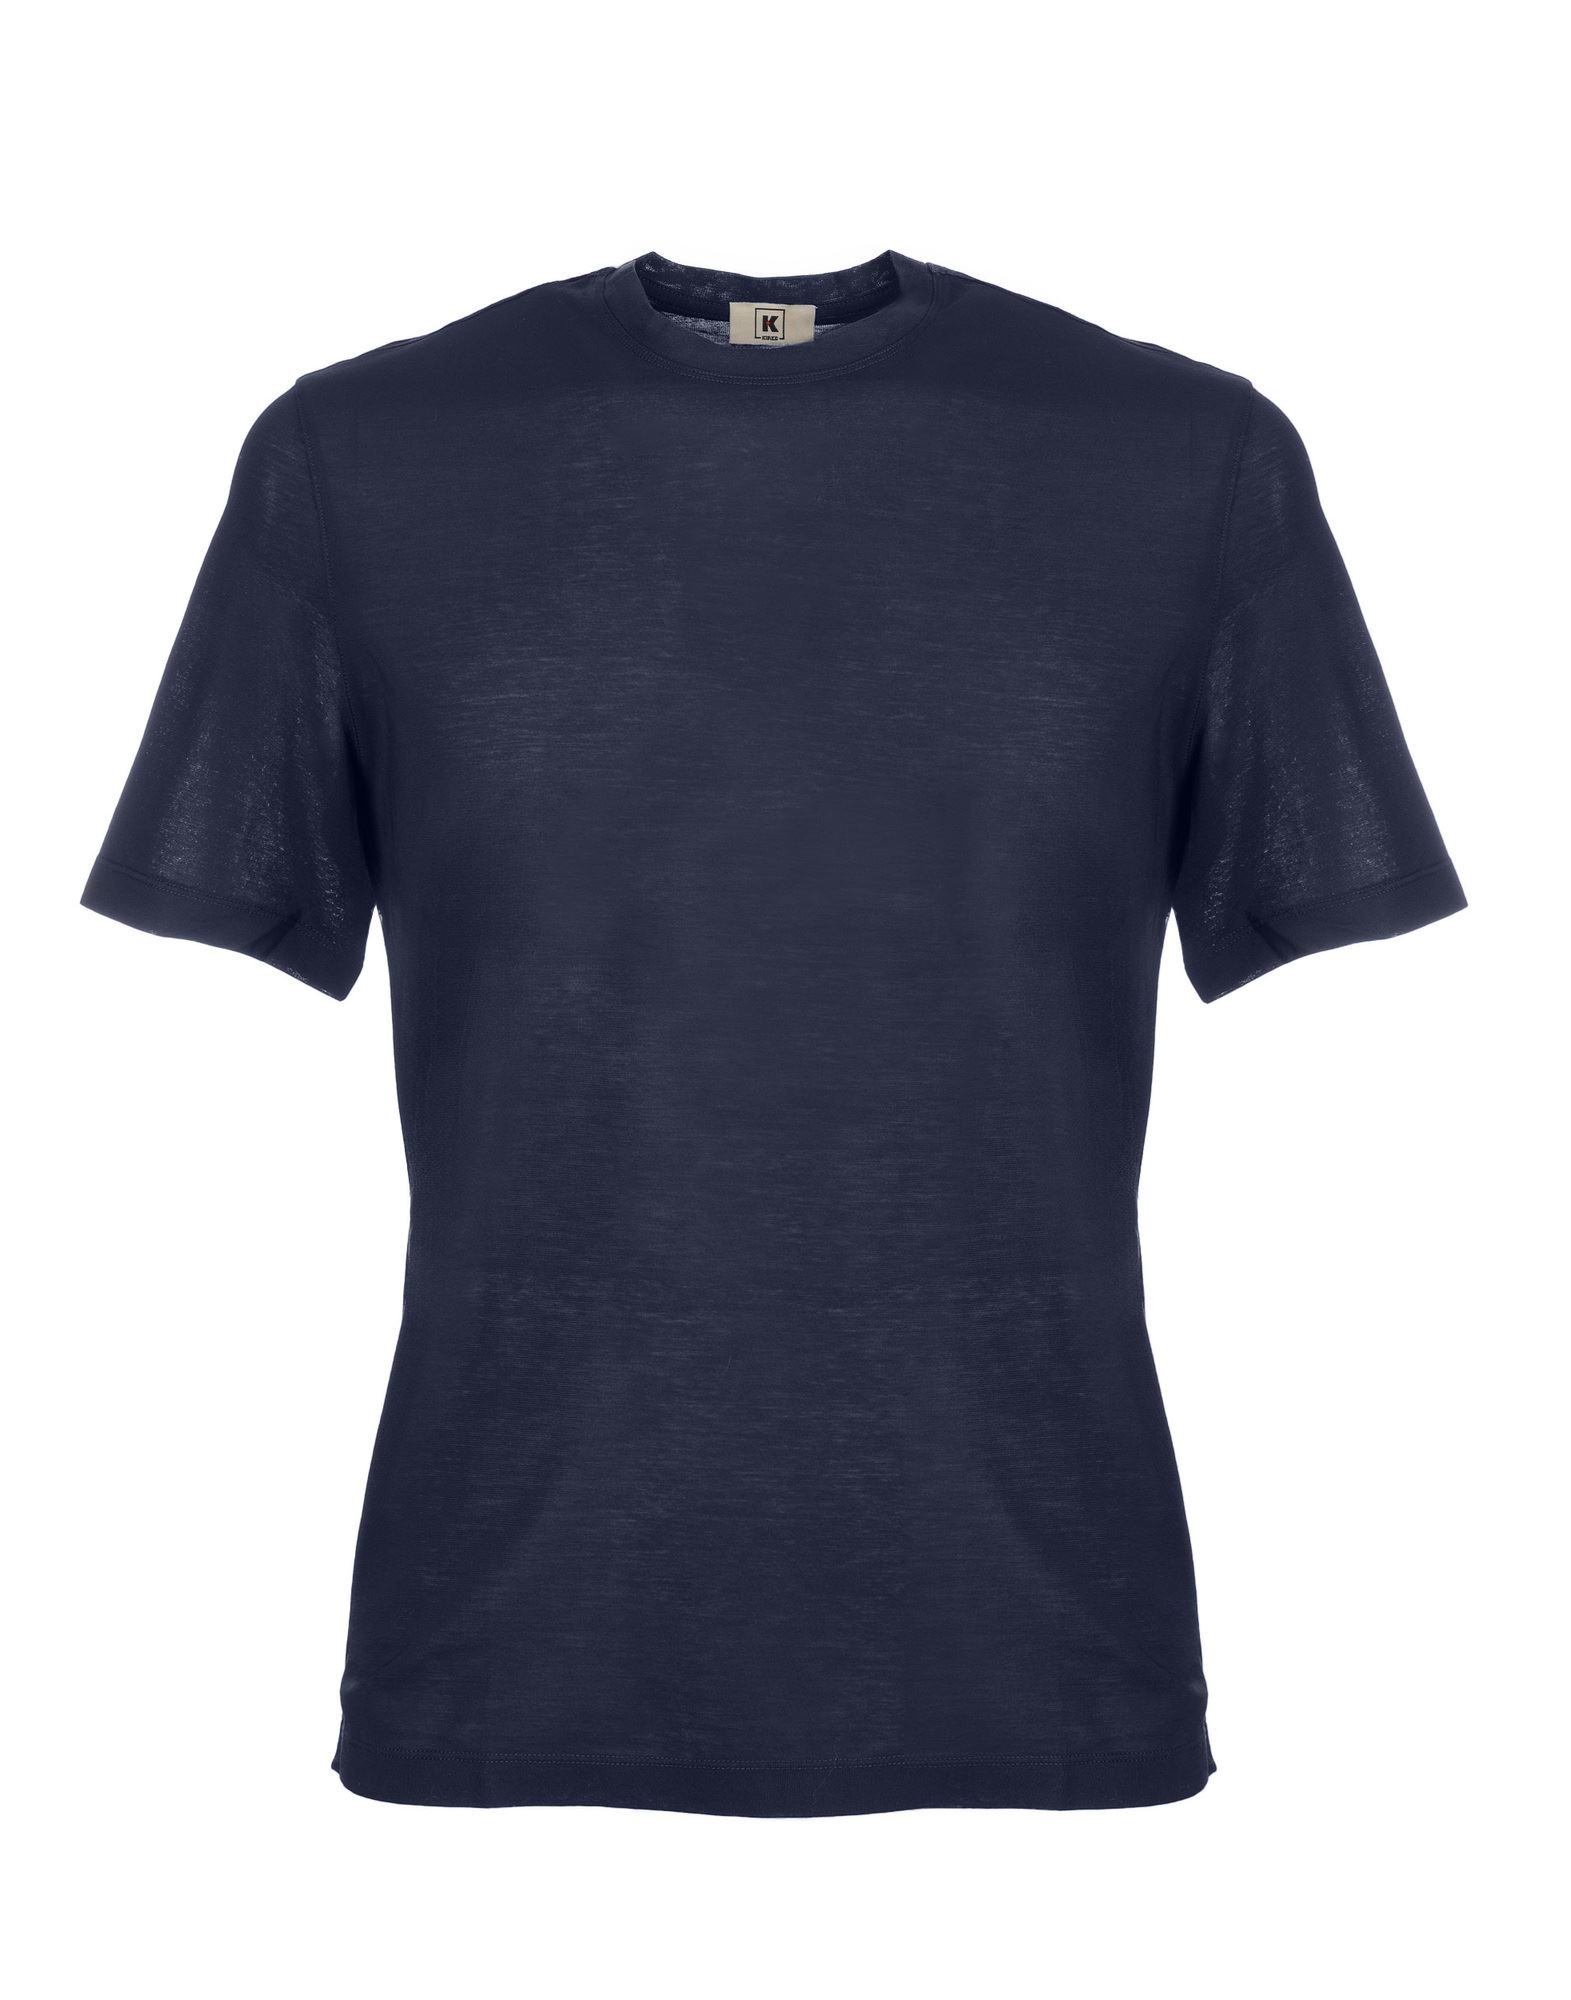 KIRED T-shirts Herren Blau von KIRED